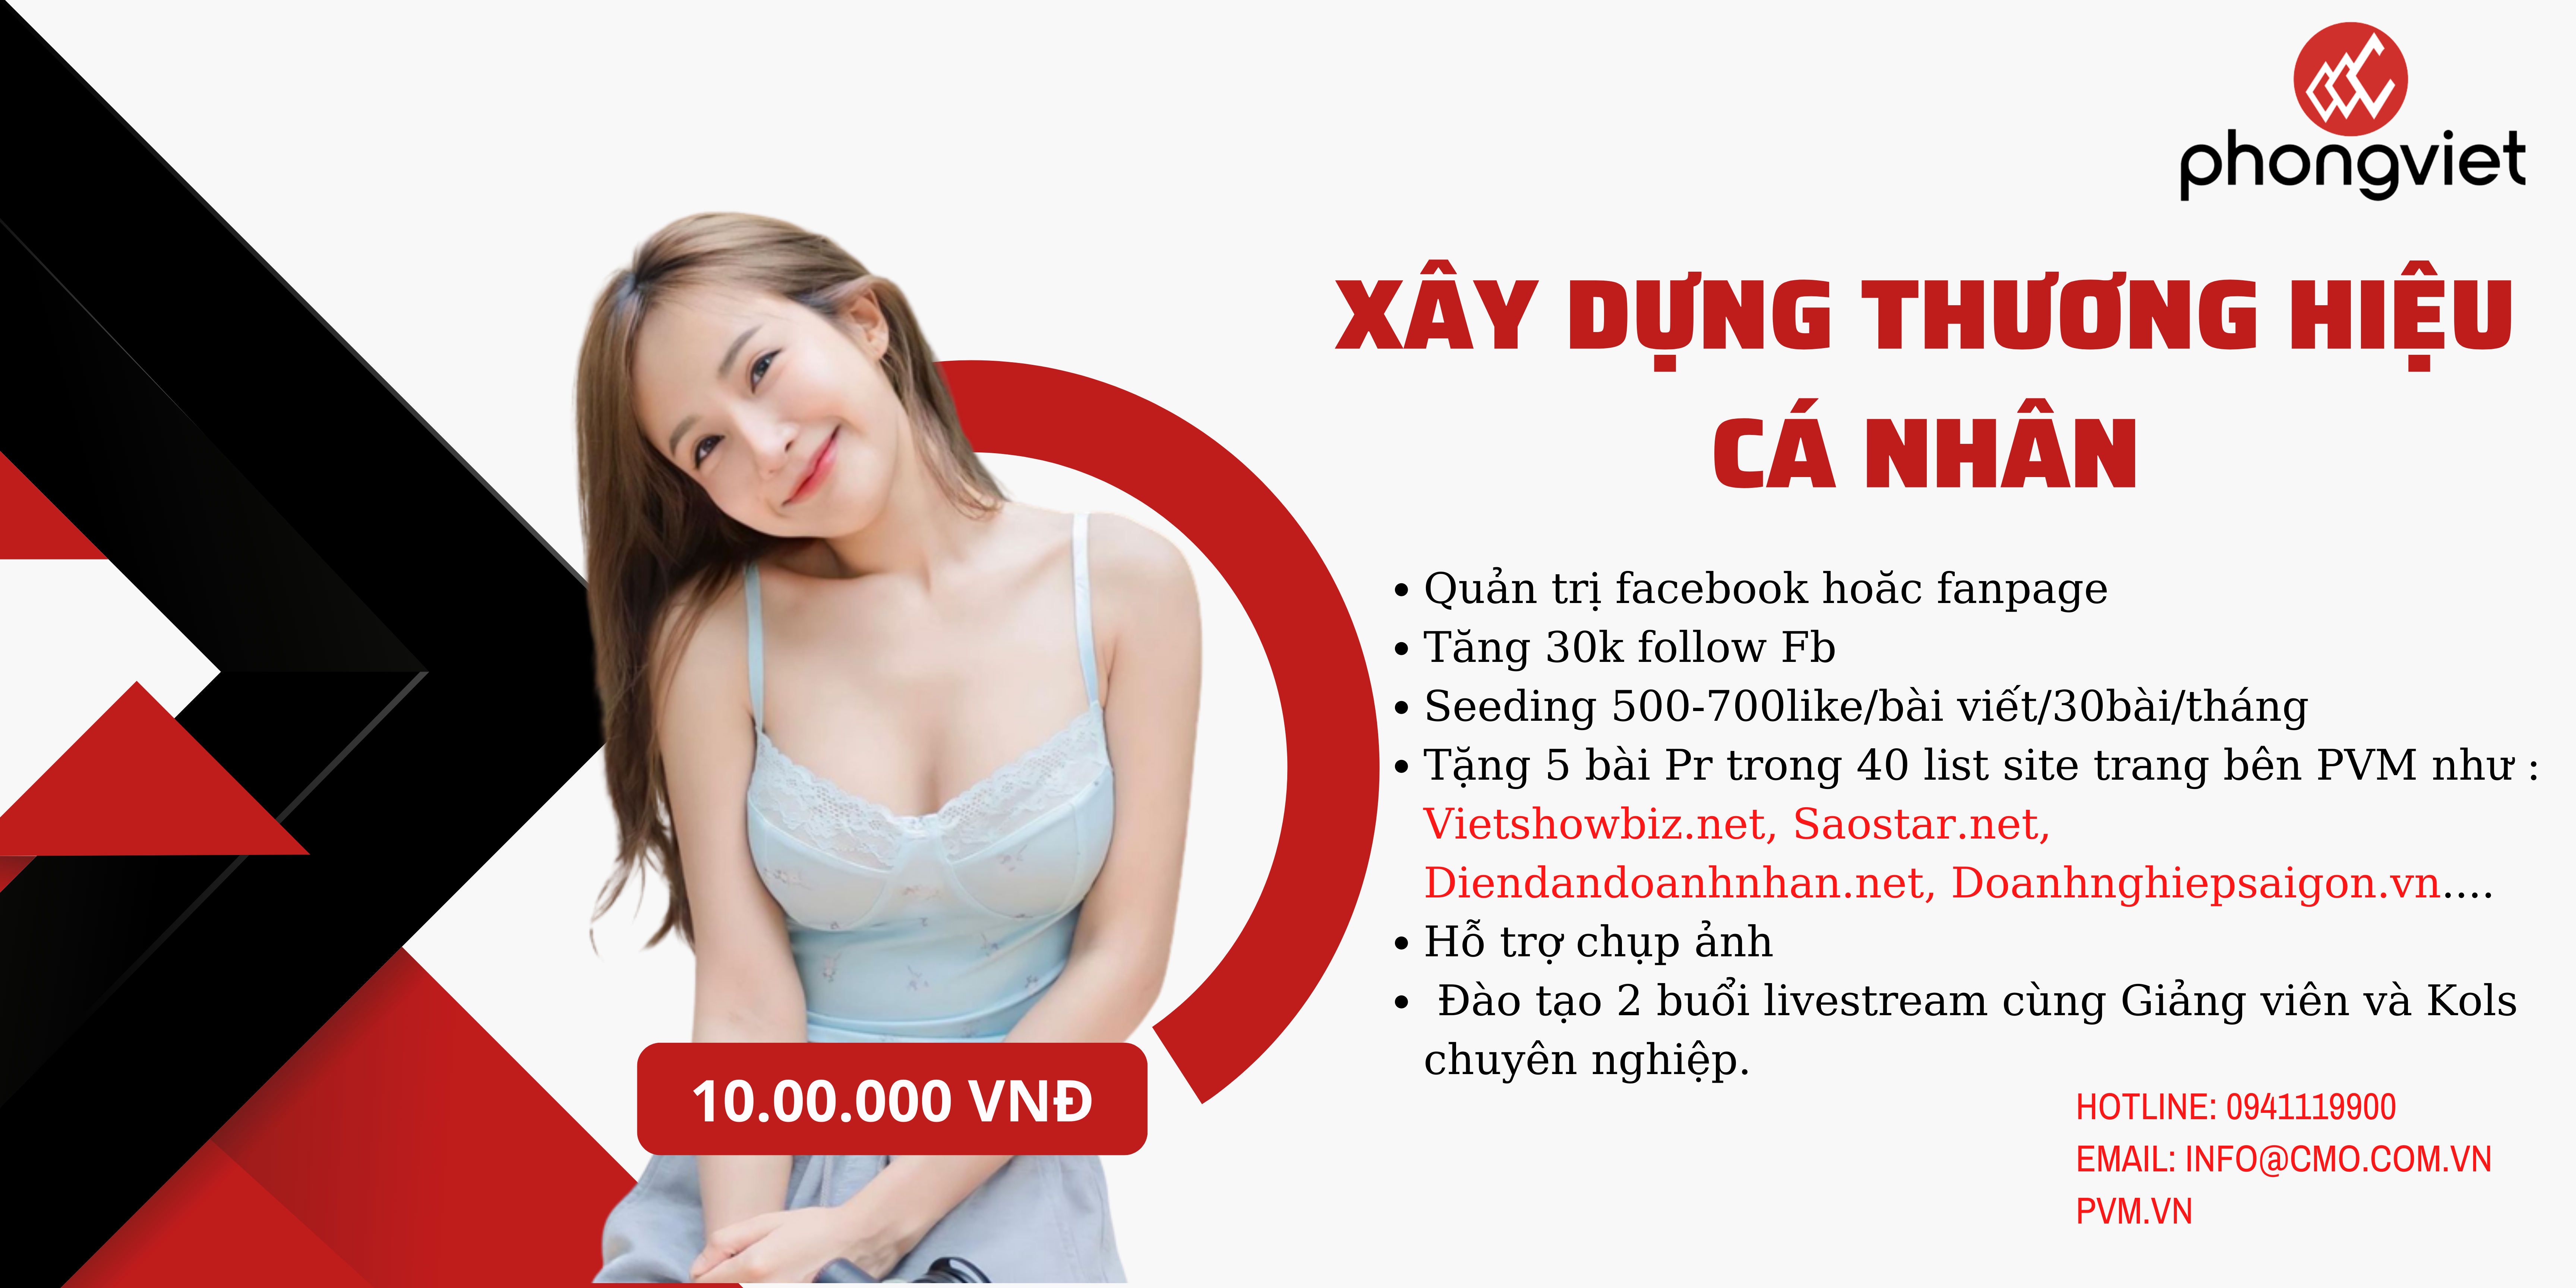 Dịch vụ xây dựng thương hiệu cá nhân 10 triệu tại Phong Việt